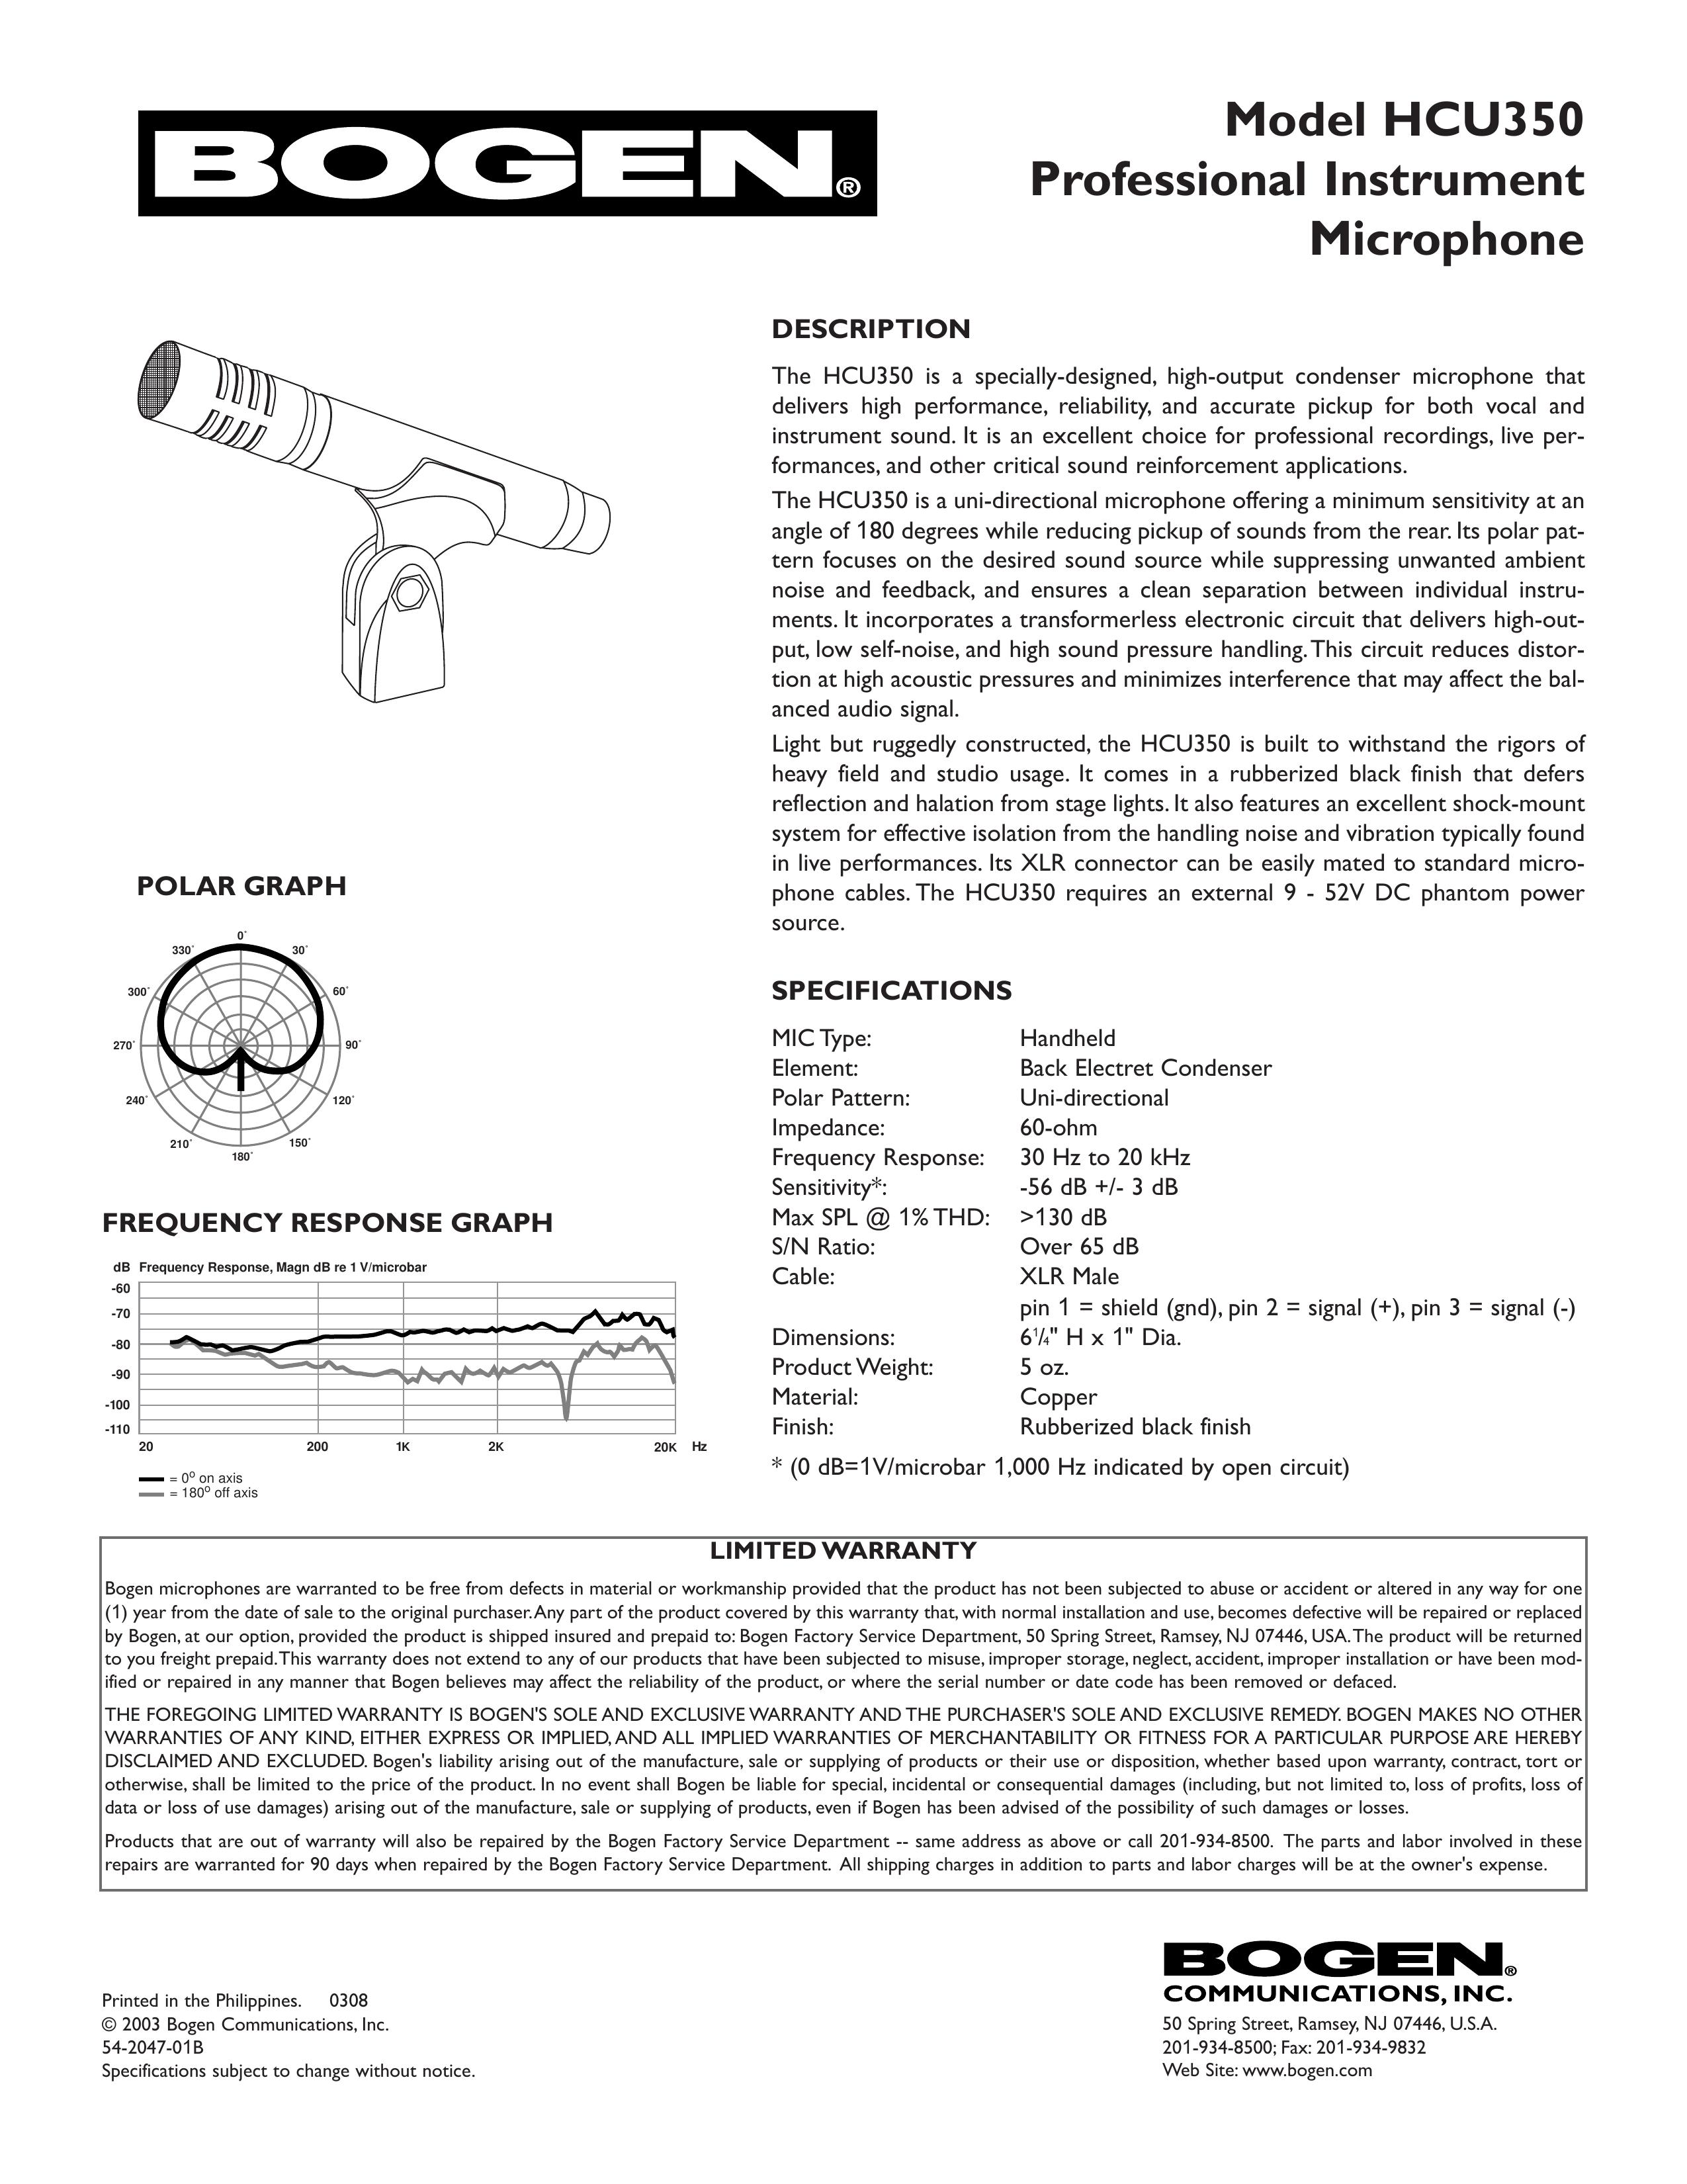 Bogen HCU350 Microphone User Manual